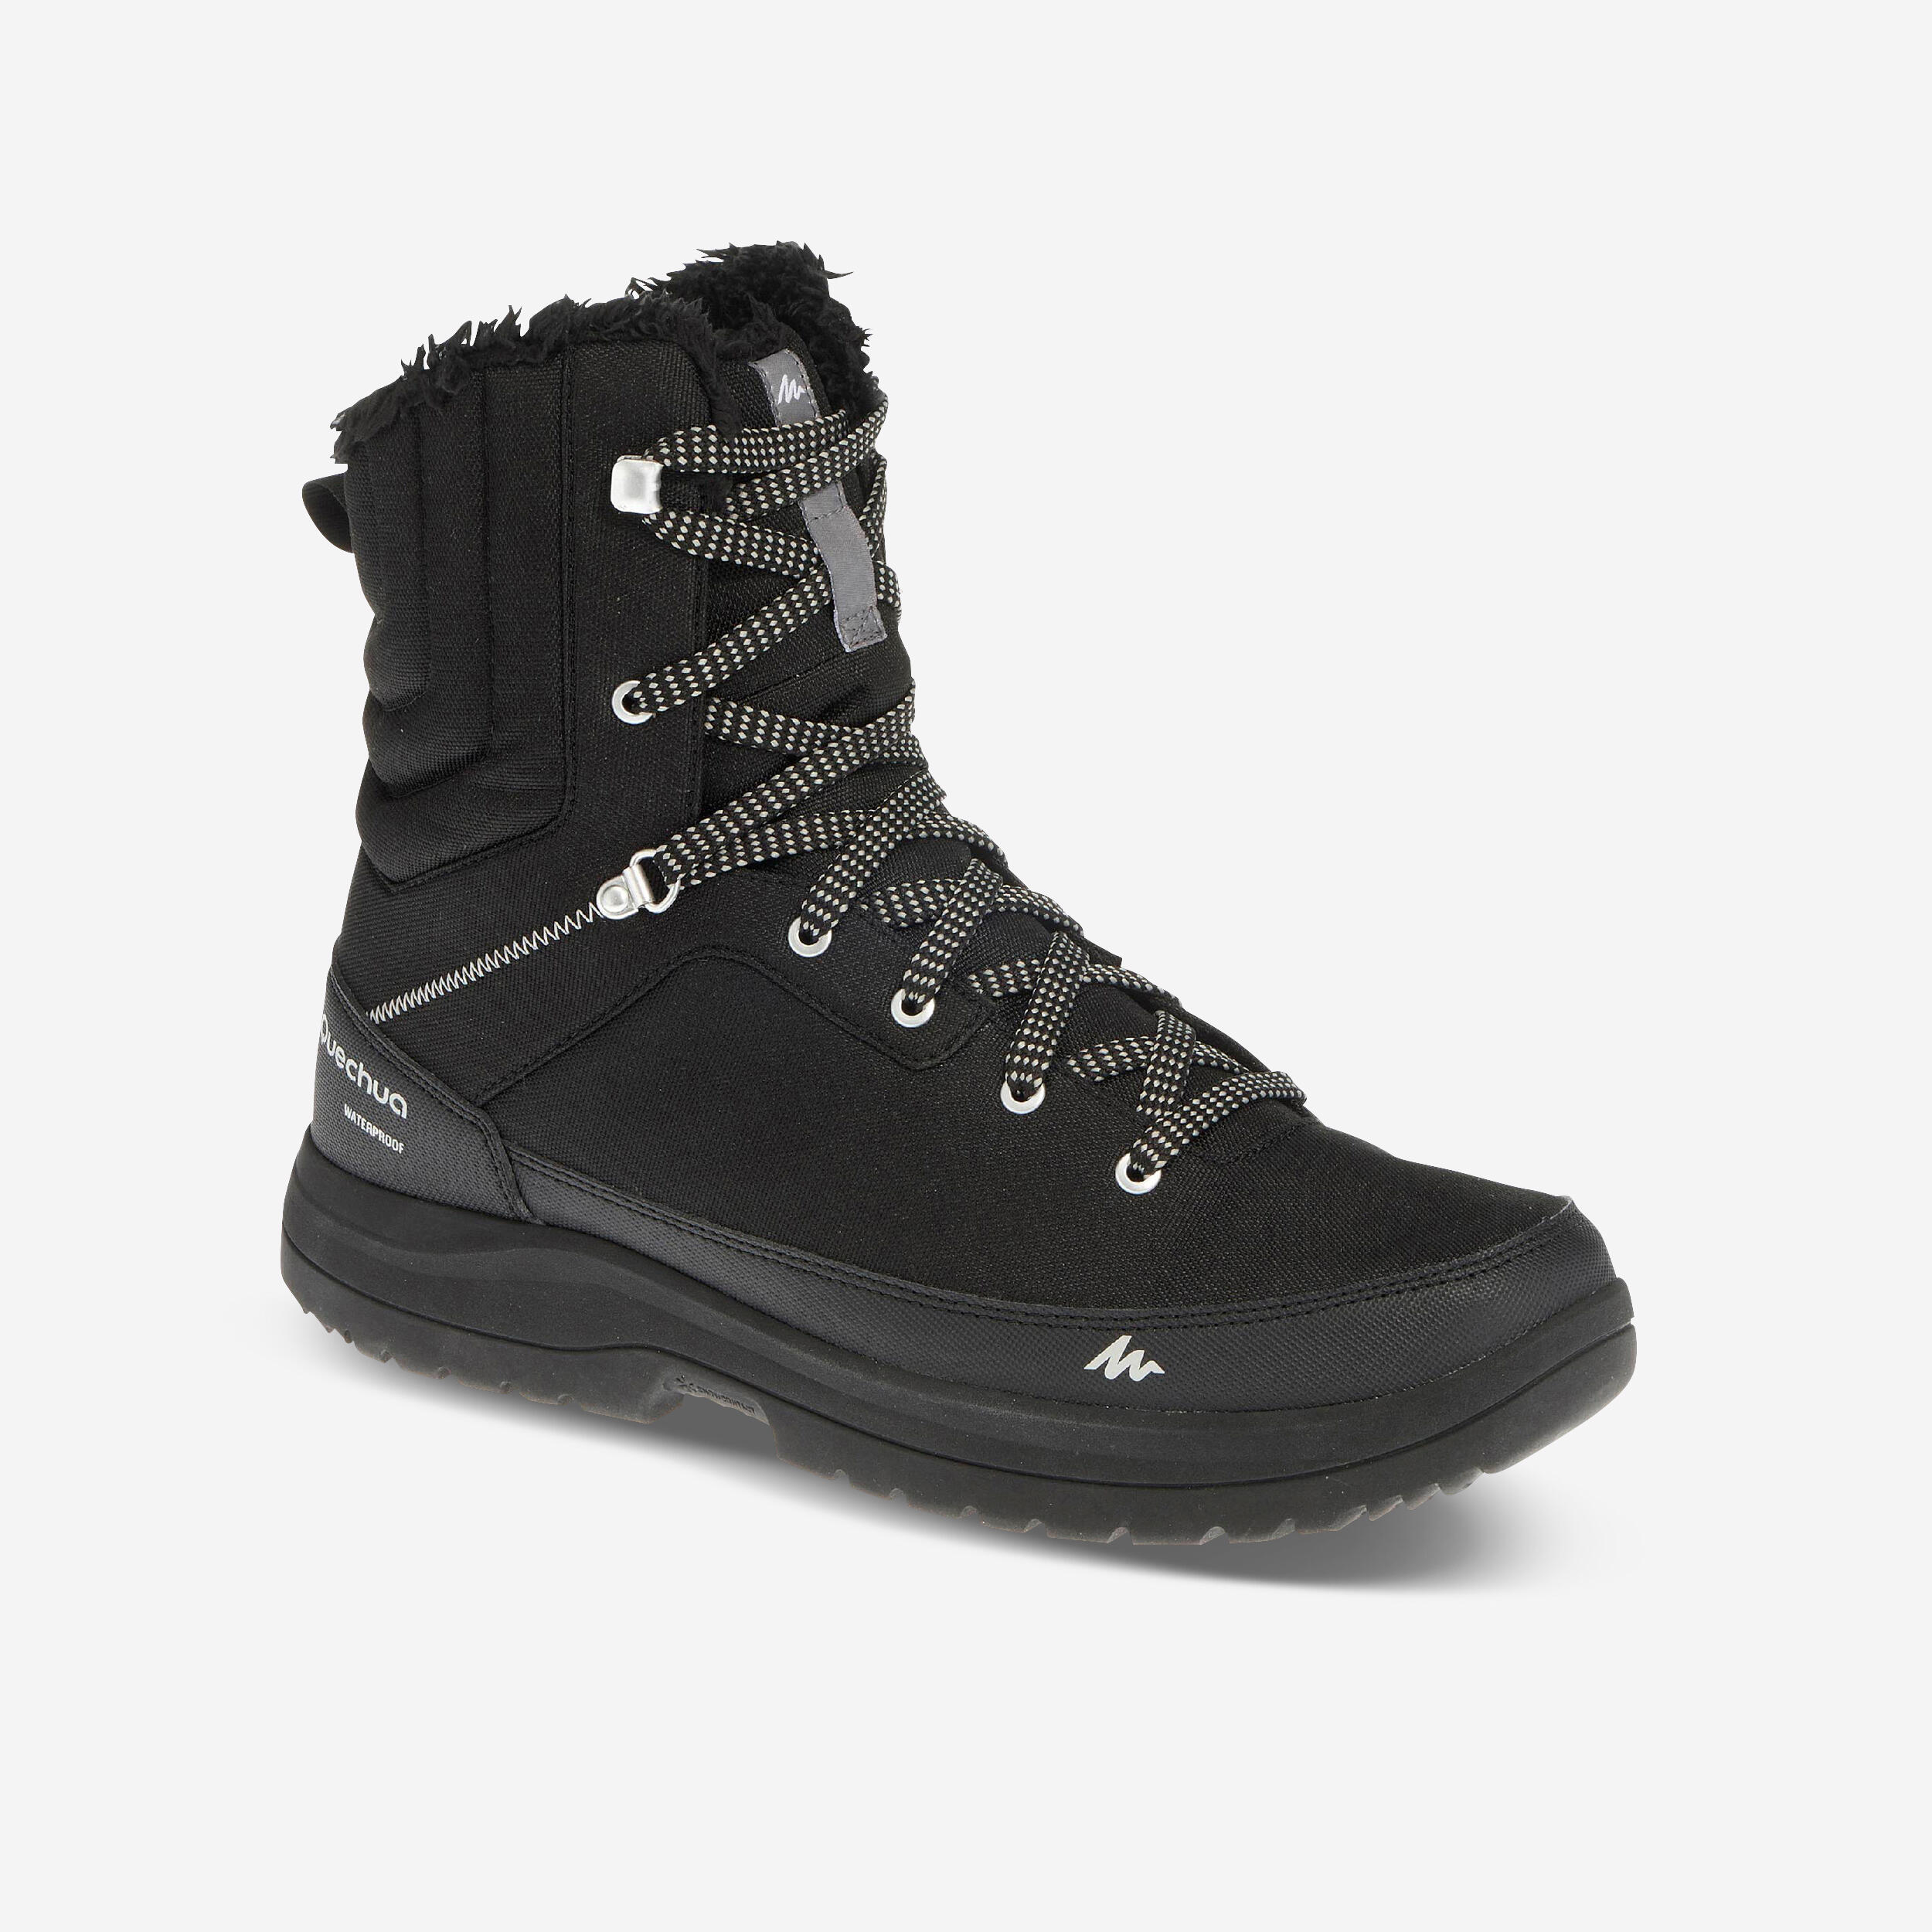 Men’s Waterproof Winter Boots